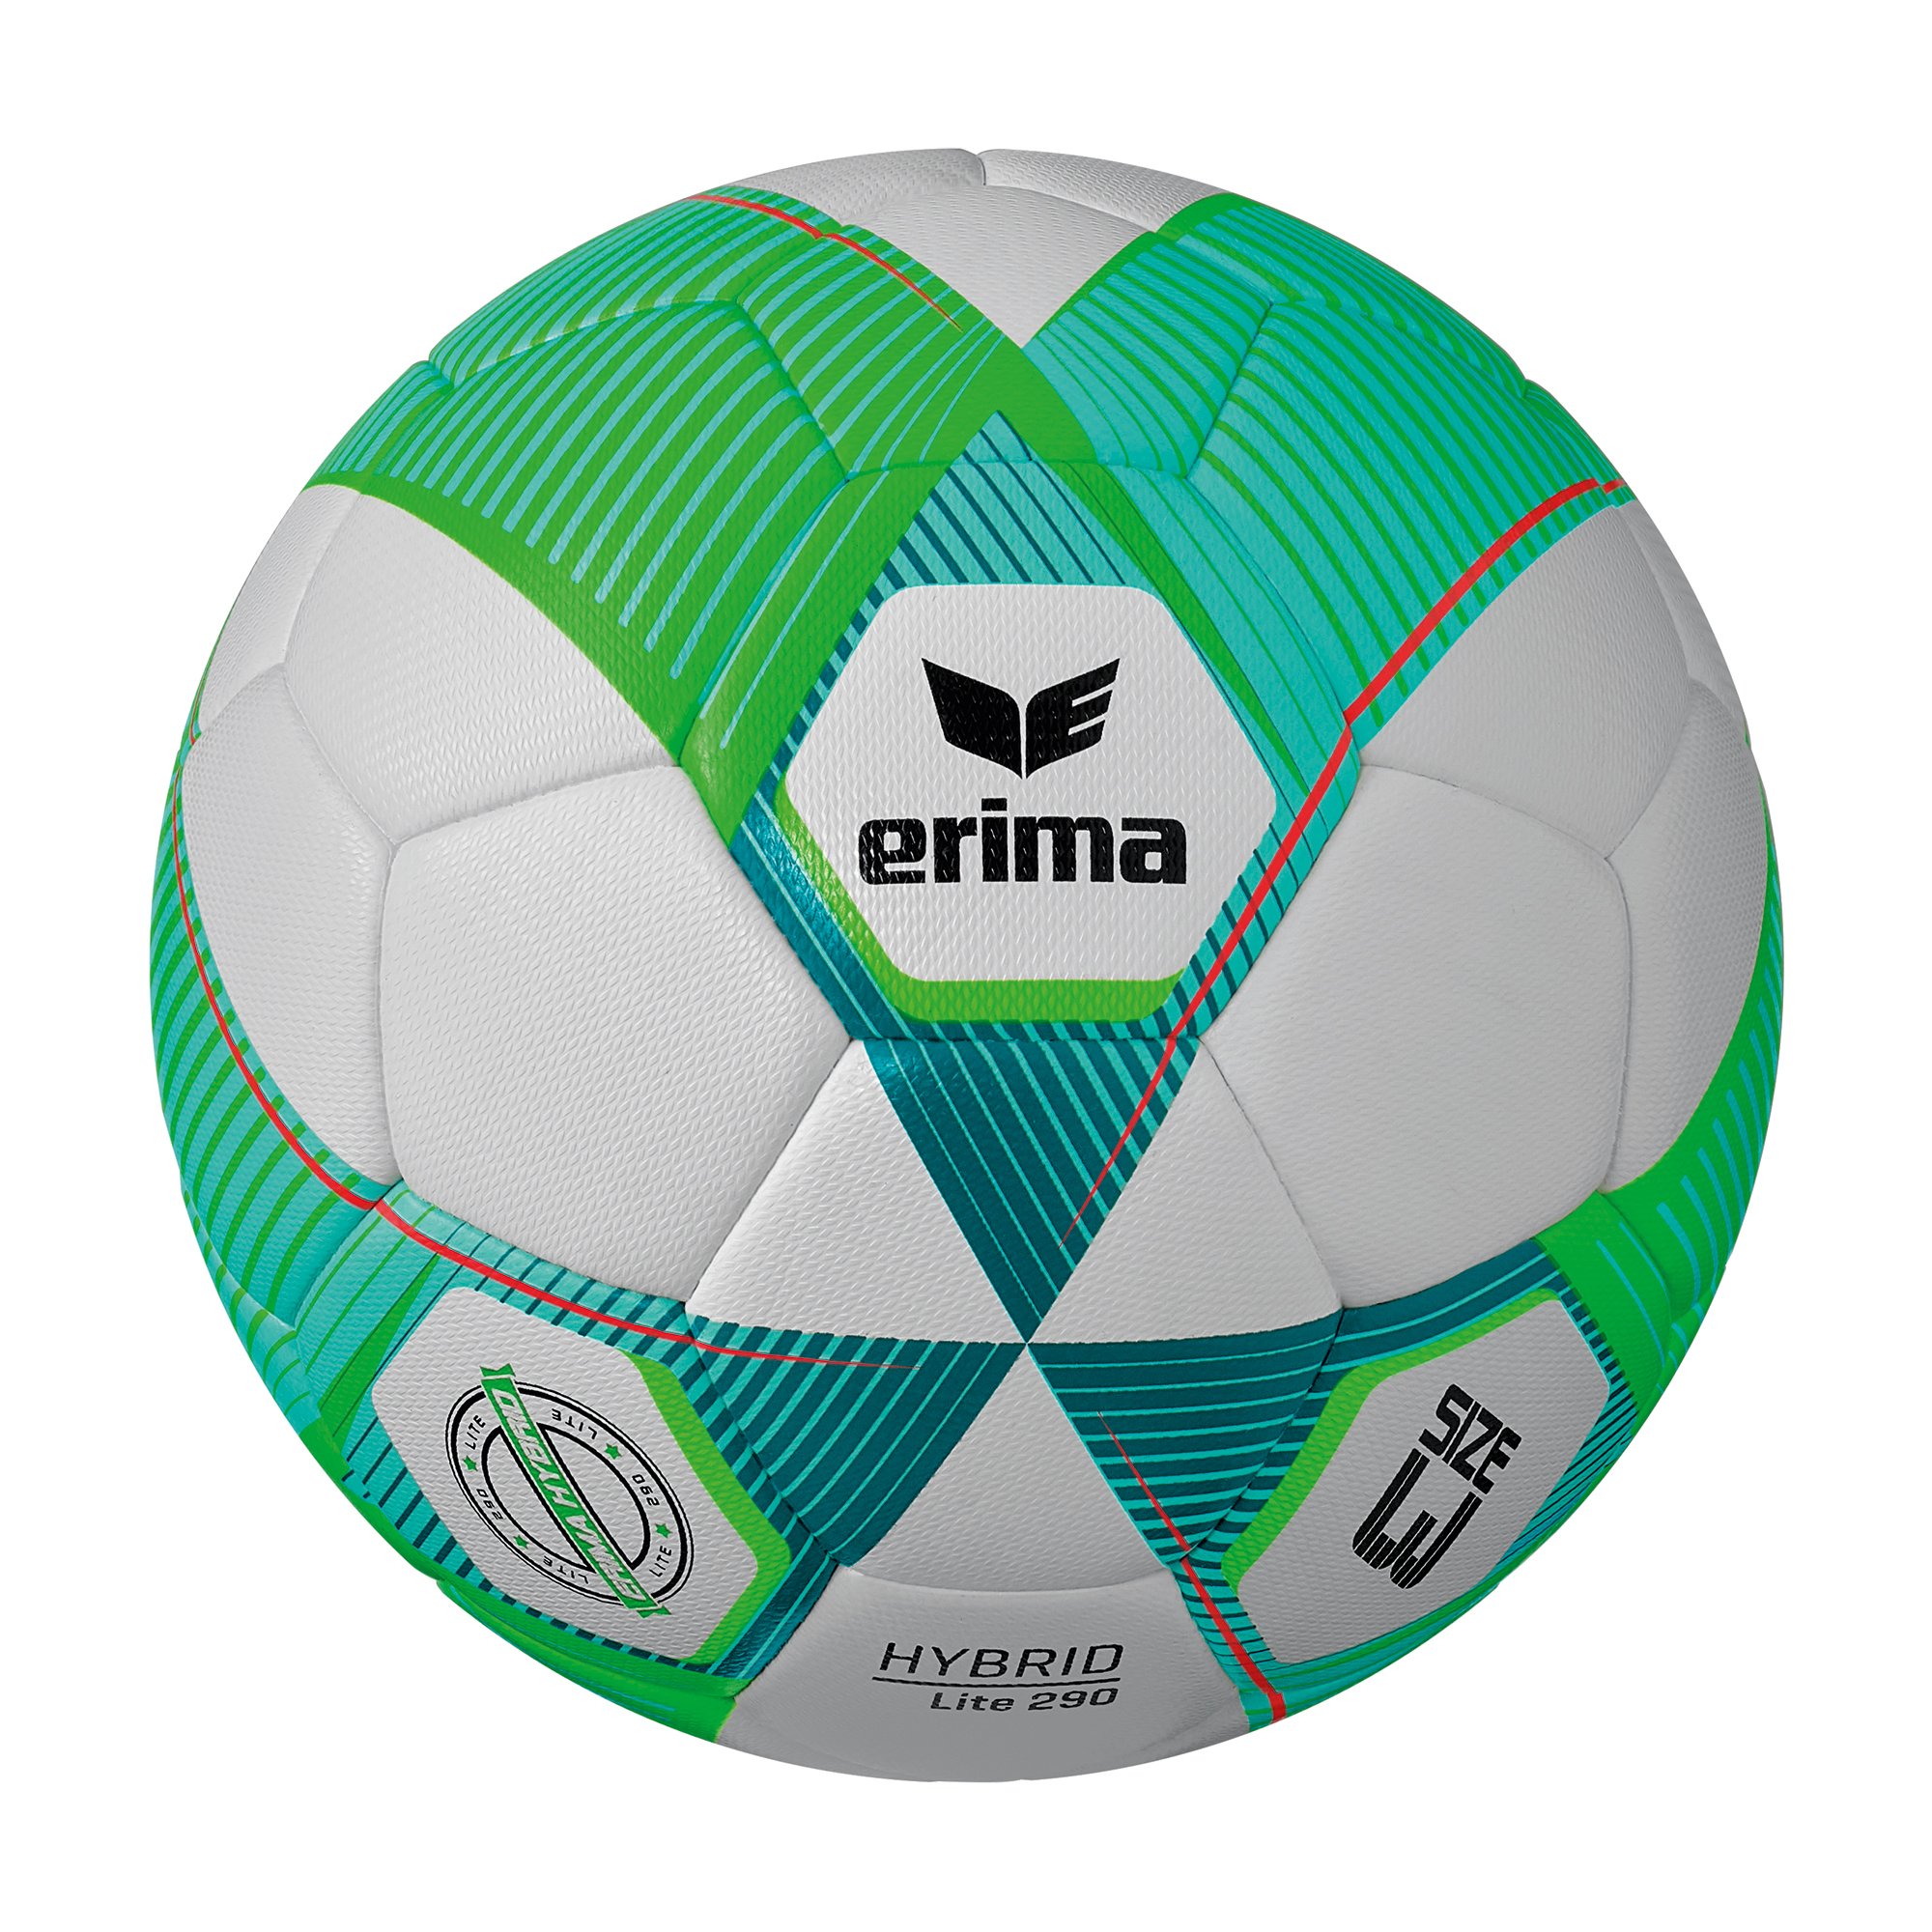 Erima Hybrid Lite 290 Fußball